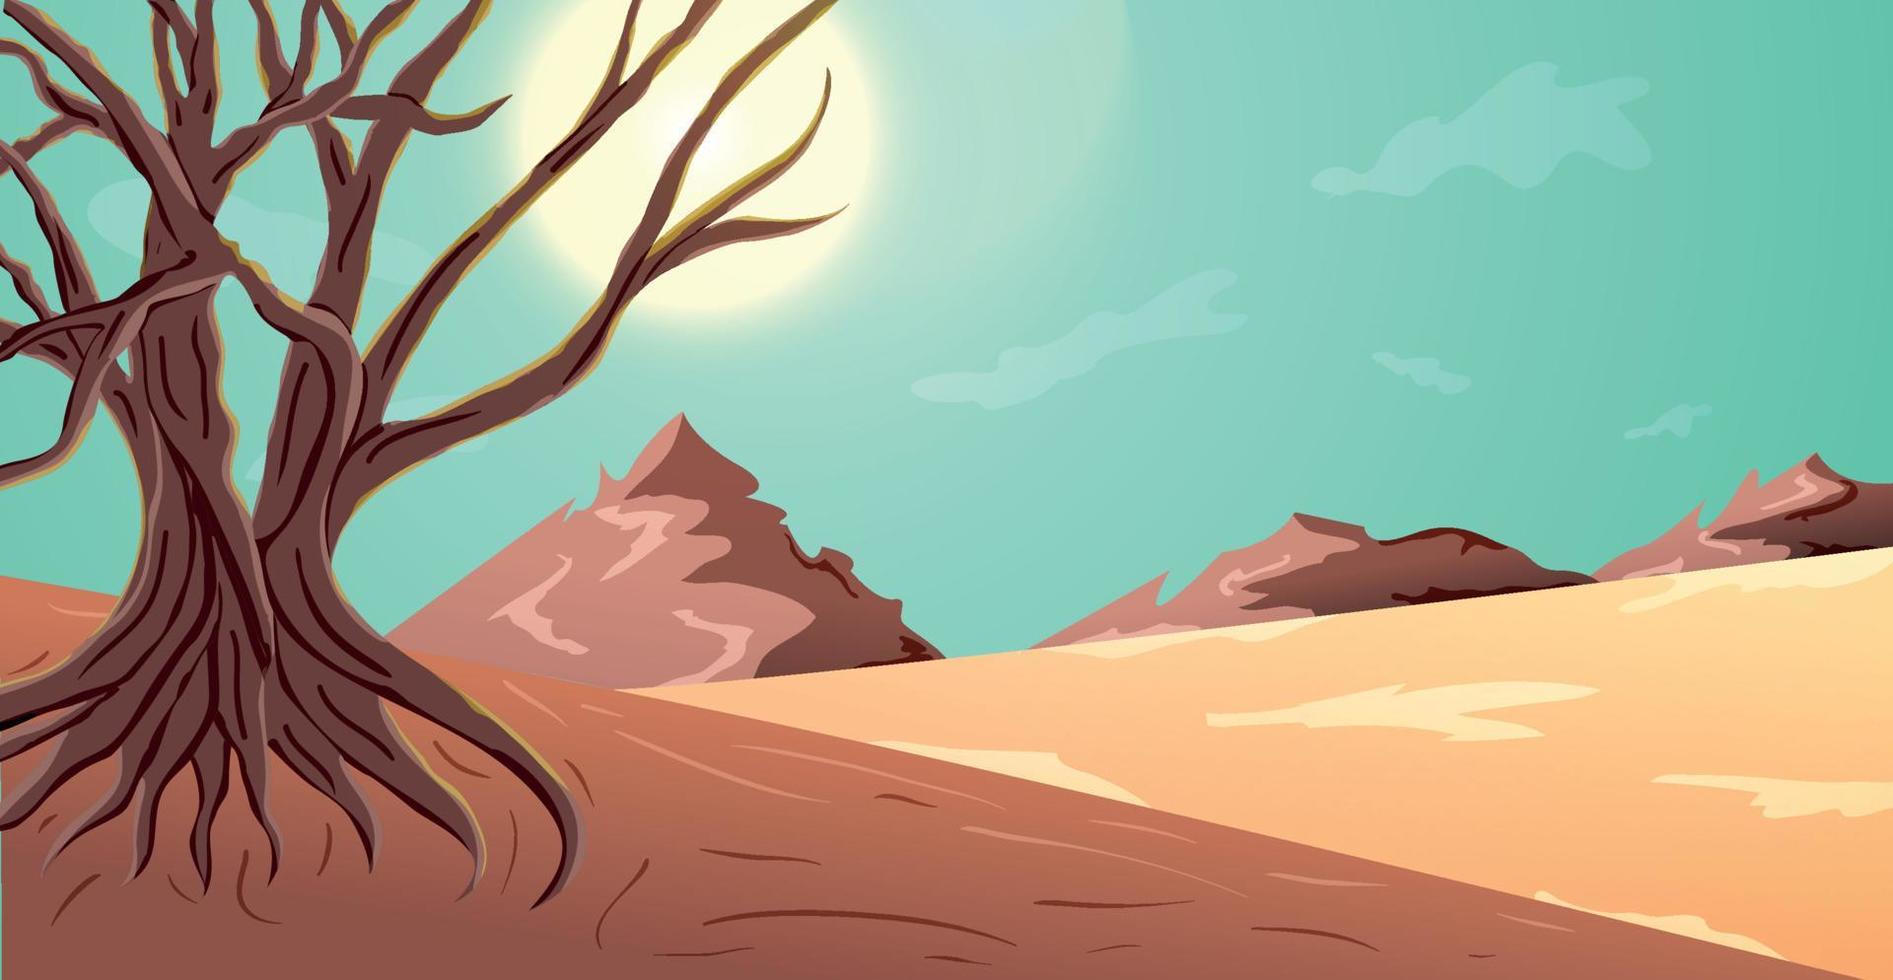 öken- sommar se landskap illustration med Fantastisk träd vektor